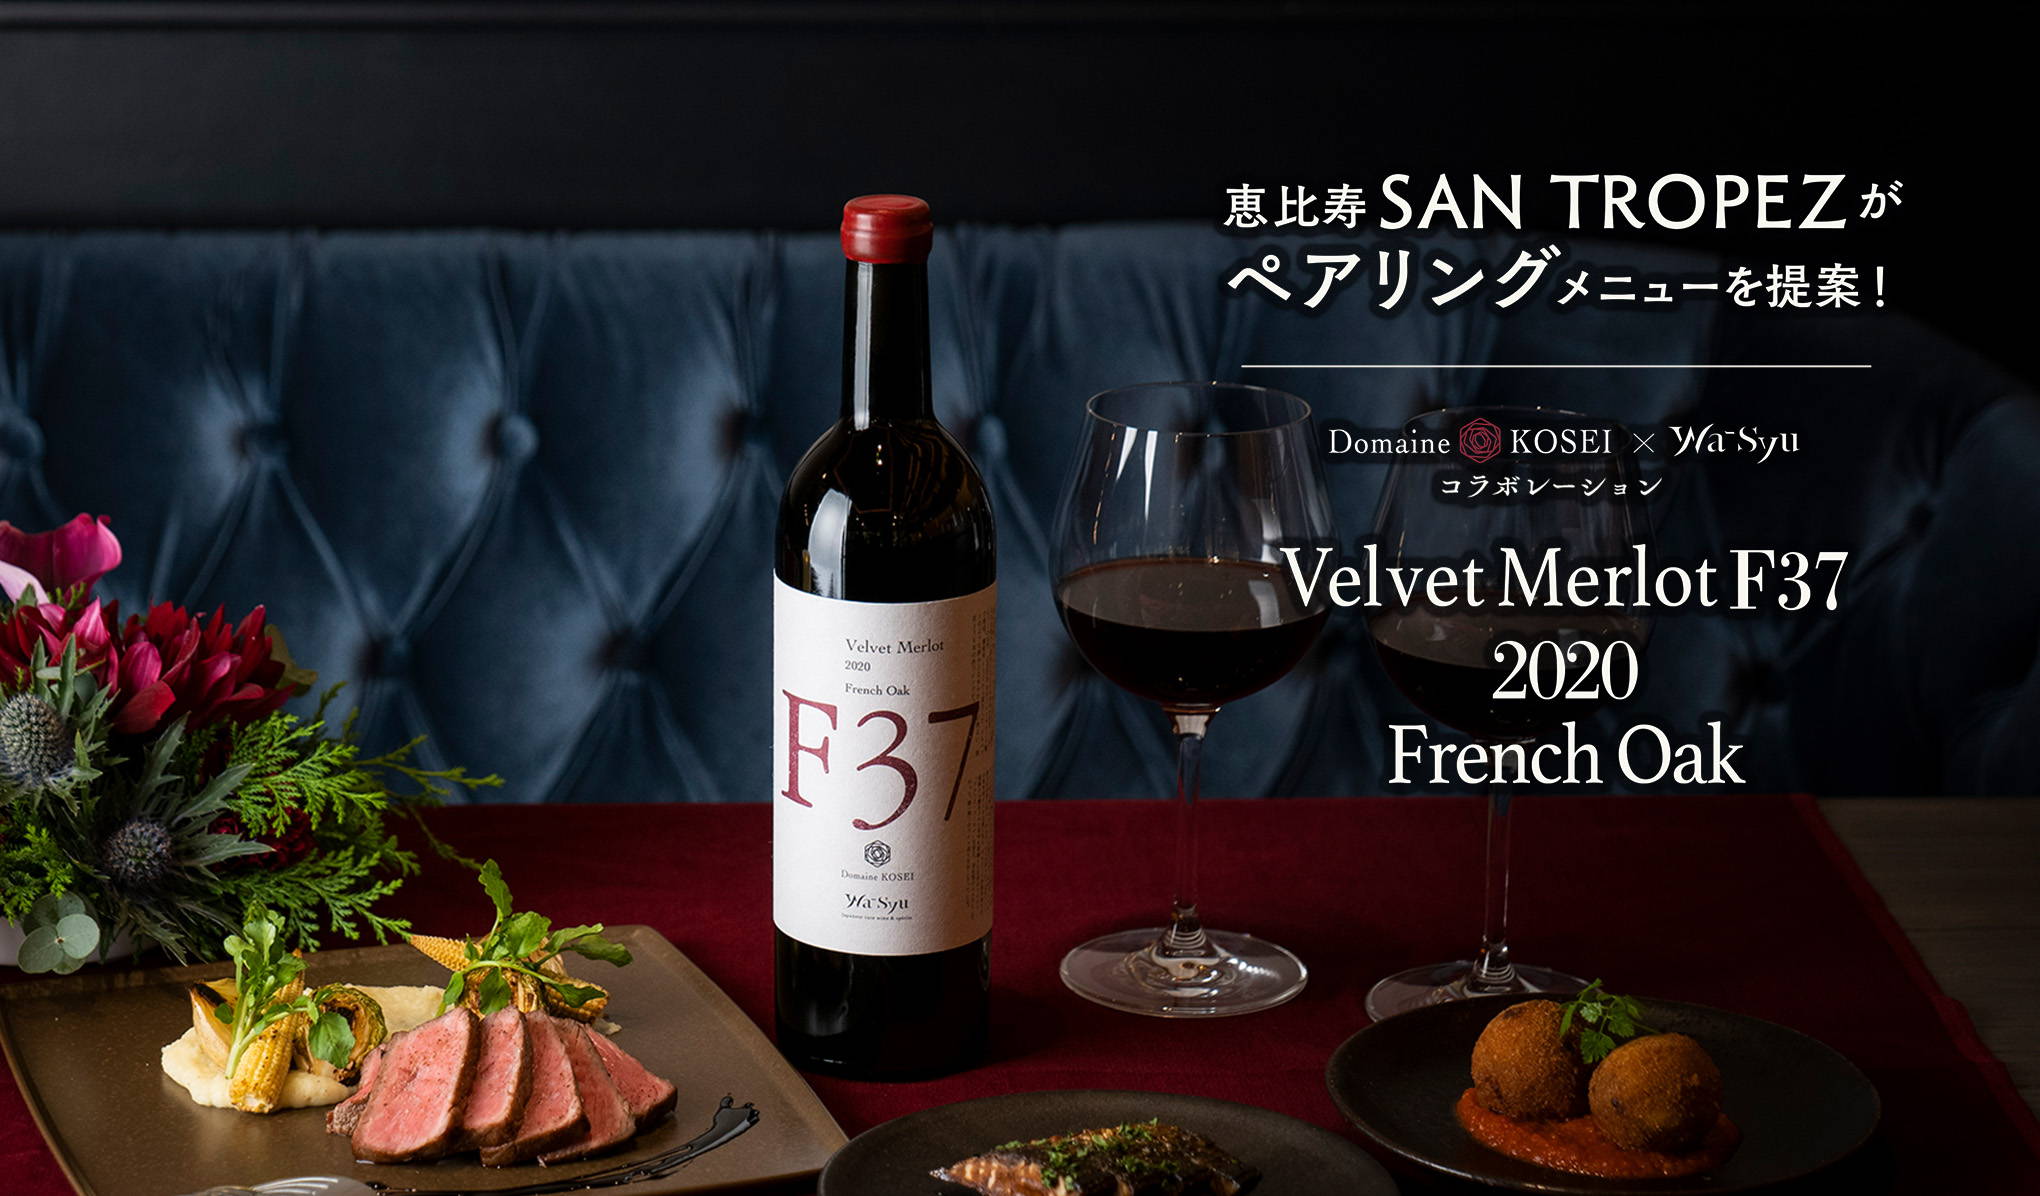 恵比寿『SAN TROPEZ』がペアリングメニューを提案！Velvet Merlot F37 2020 French Oak